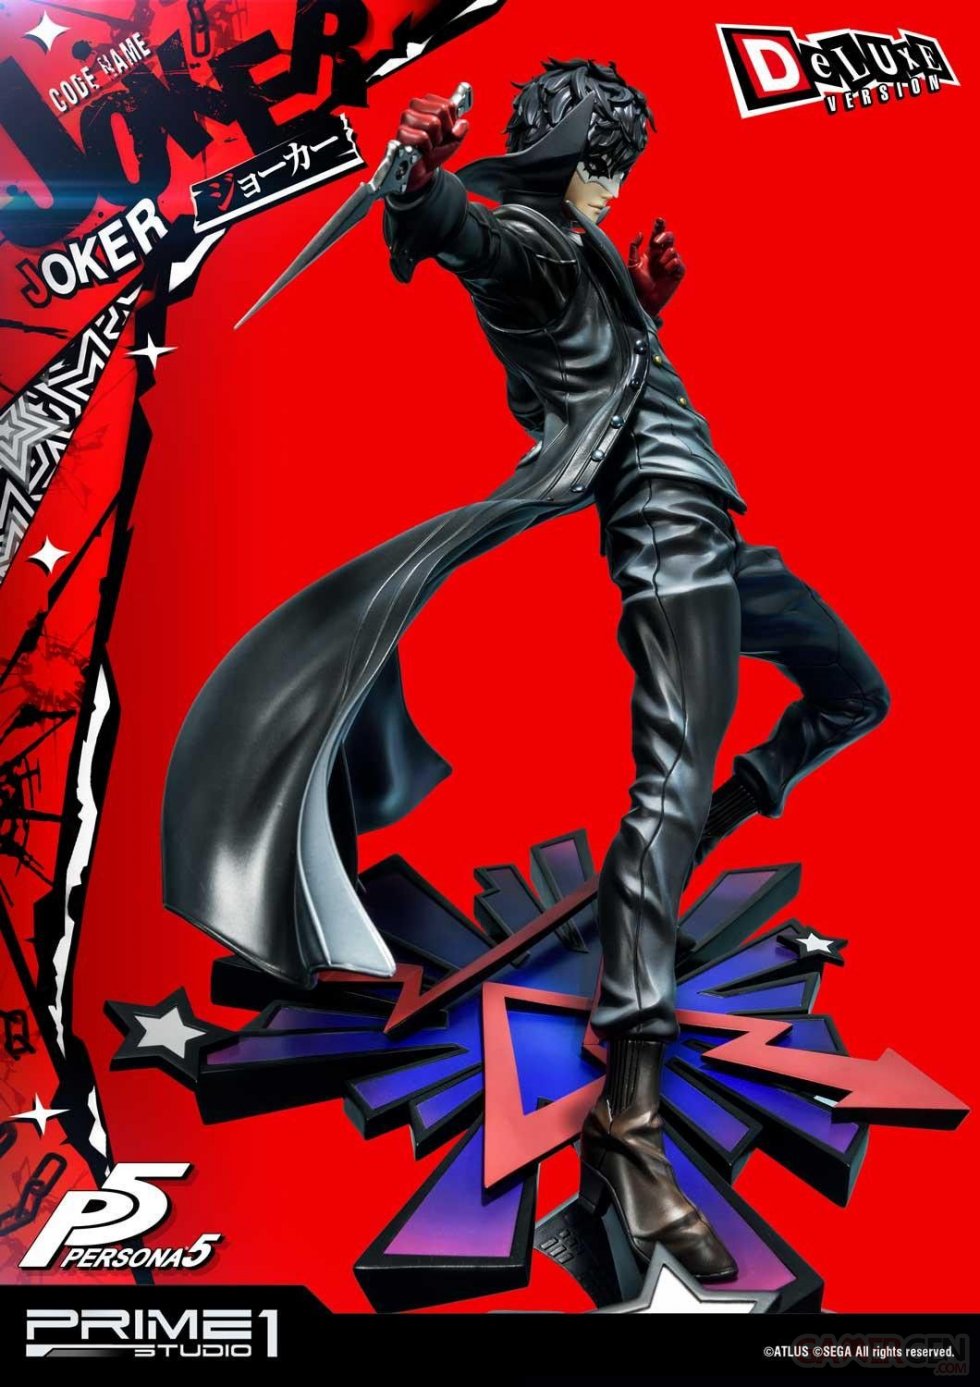 Persona-5-Joker-Prime-1-Studio-statuette-Deluxe-version-15-02-07-2020